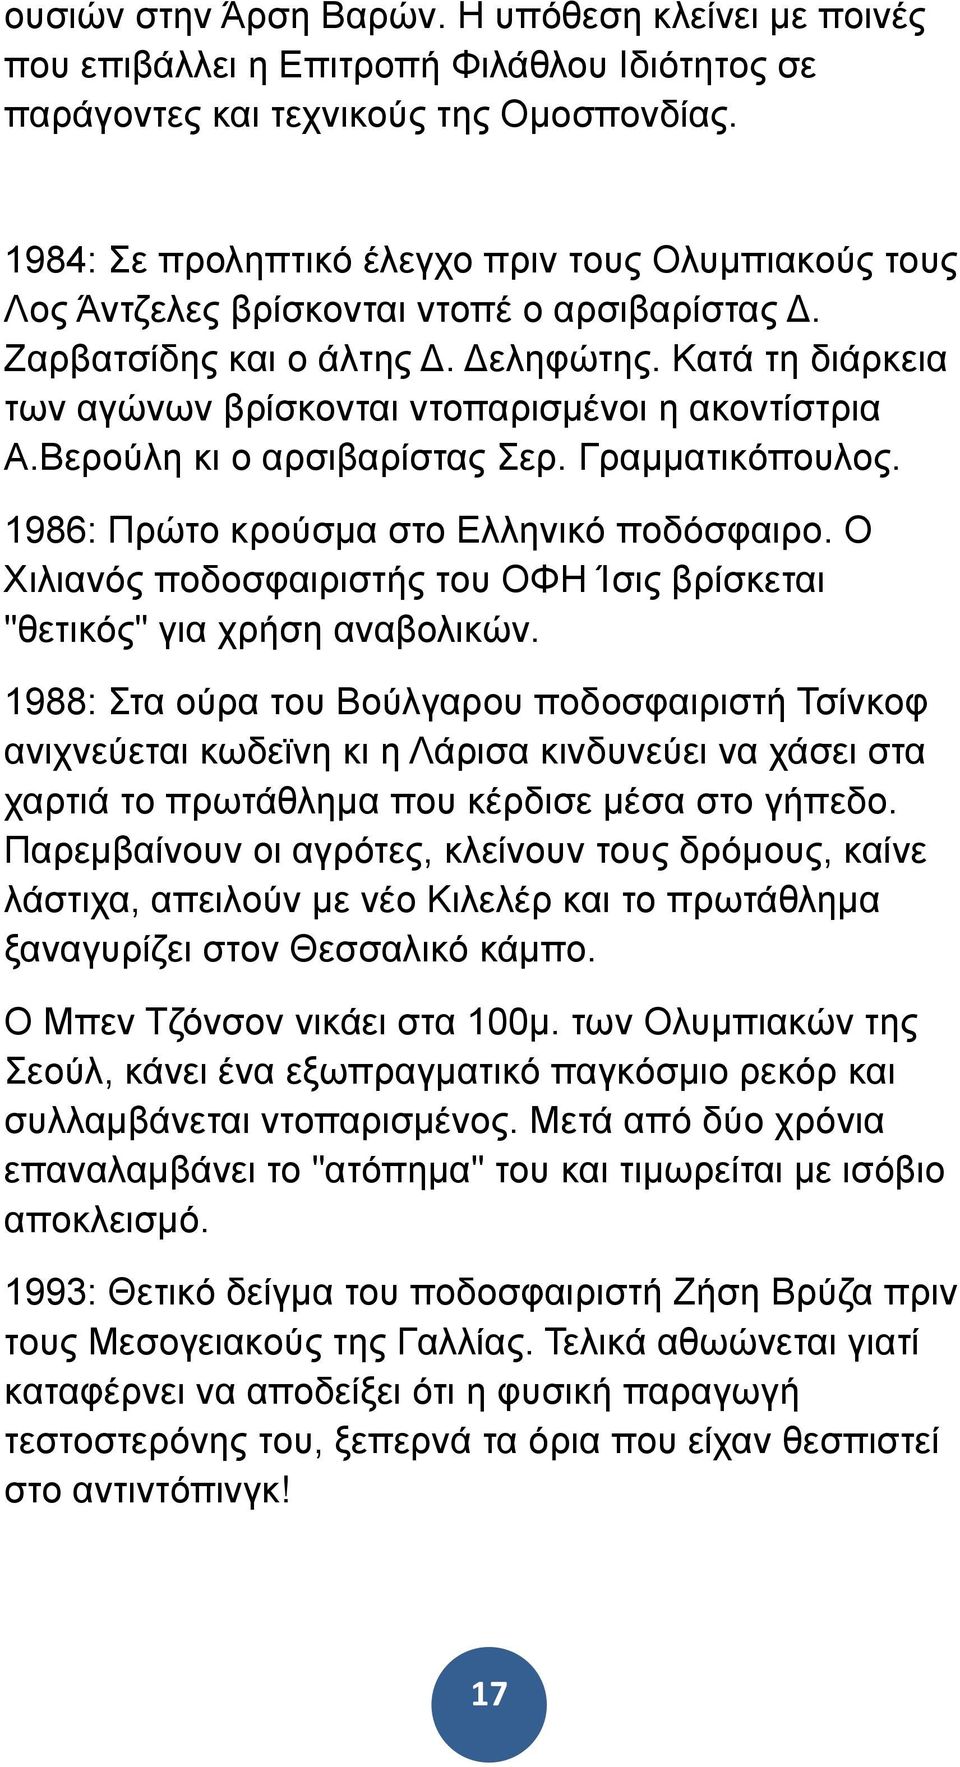 Κατά τη διάρκεια των αγώνων βρίσκονται ντοπαρισµένοι η ακοντίστρια Α.Βερούλη κι ο αρσιβαρίστας Σερ. Γραµµατικόπουλος. 1986: Πρώτο κρούσµα στο Ελληνικό ποδόσφαιρο.